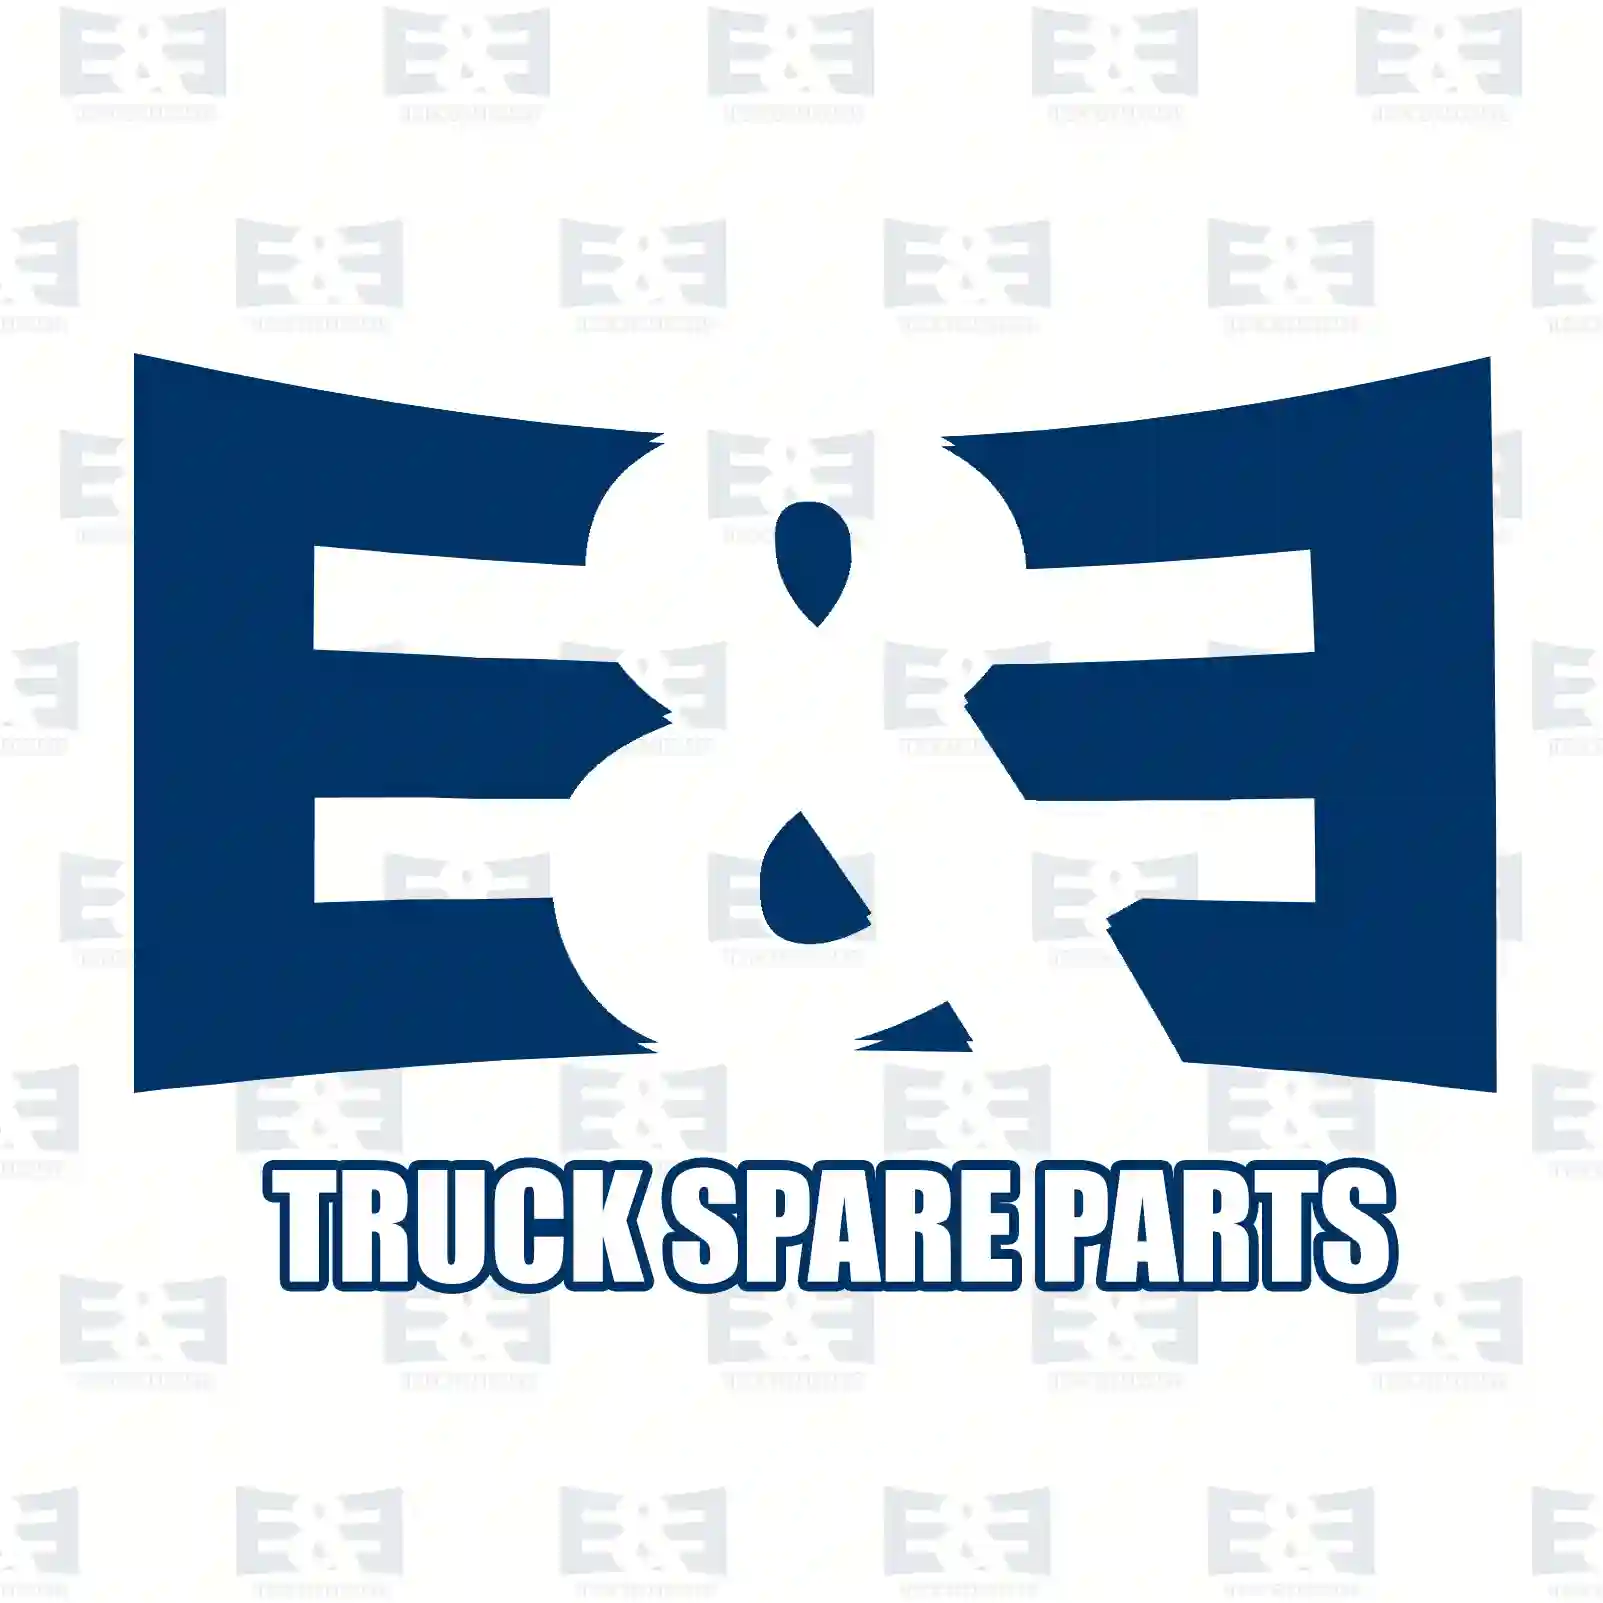 Step well case, right, 2E2280068, 1363817, 1437810, 1656918, 1893902 ||  2E2280068 E&E Truck Spare Parts | Truck Spare Parts, Auotomotive Spare Parts Step well case, right, 2E2280068, 1363817, 1437810, 1656918, 1893902 ||  2E2280068 E&E Truck Spare Parts | Truck Spare Parts, Auotomotive Spare Parts